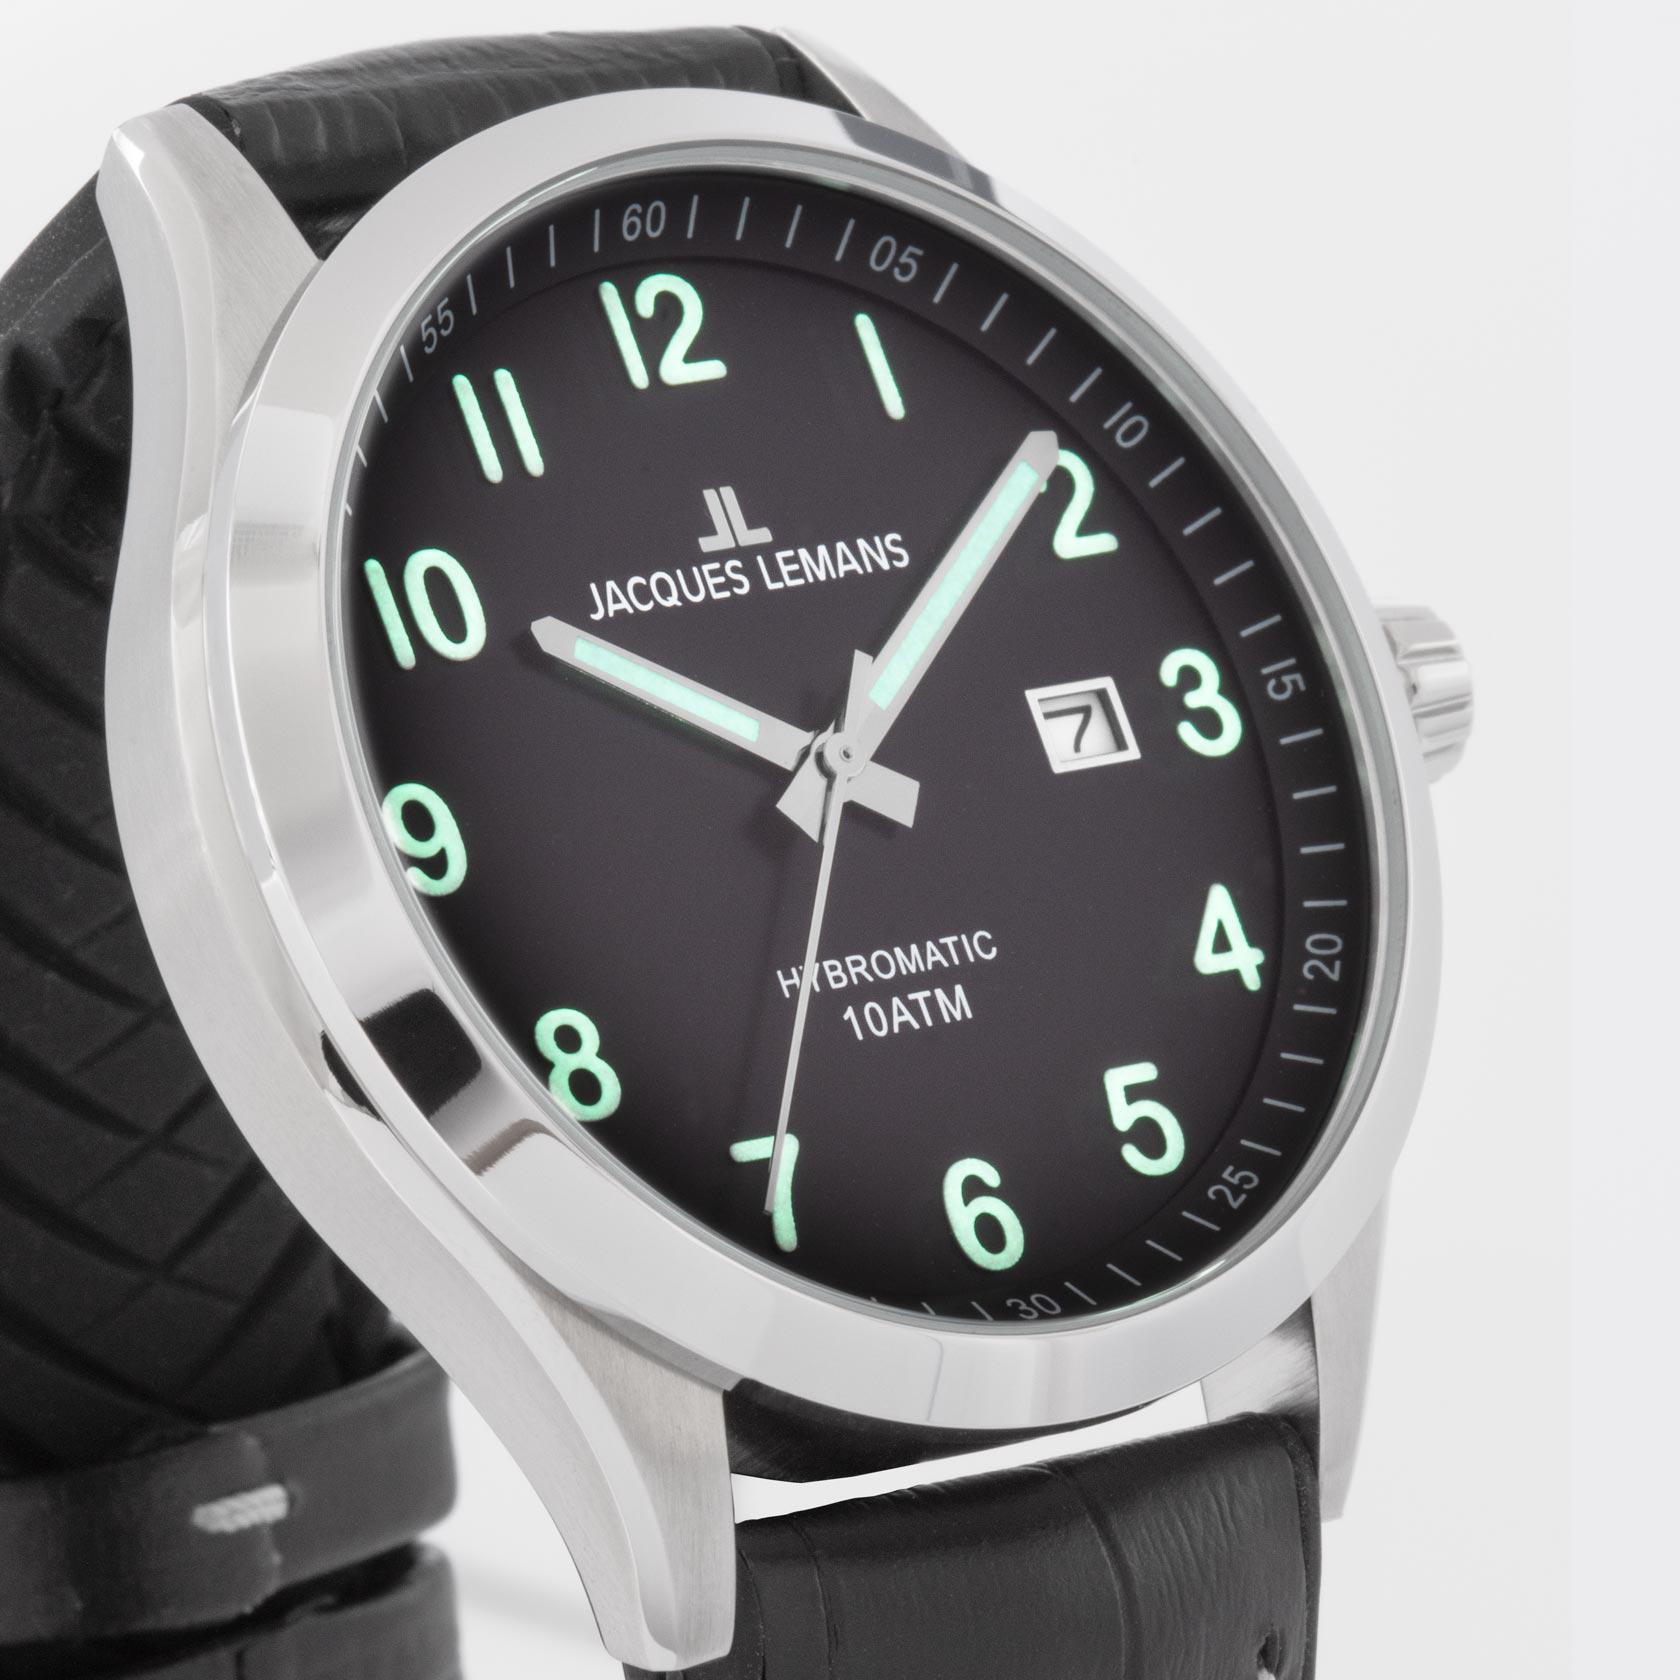 - купить 1-2130D, Hybromatic мужские часы Jacques Lemans